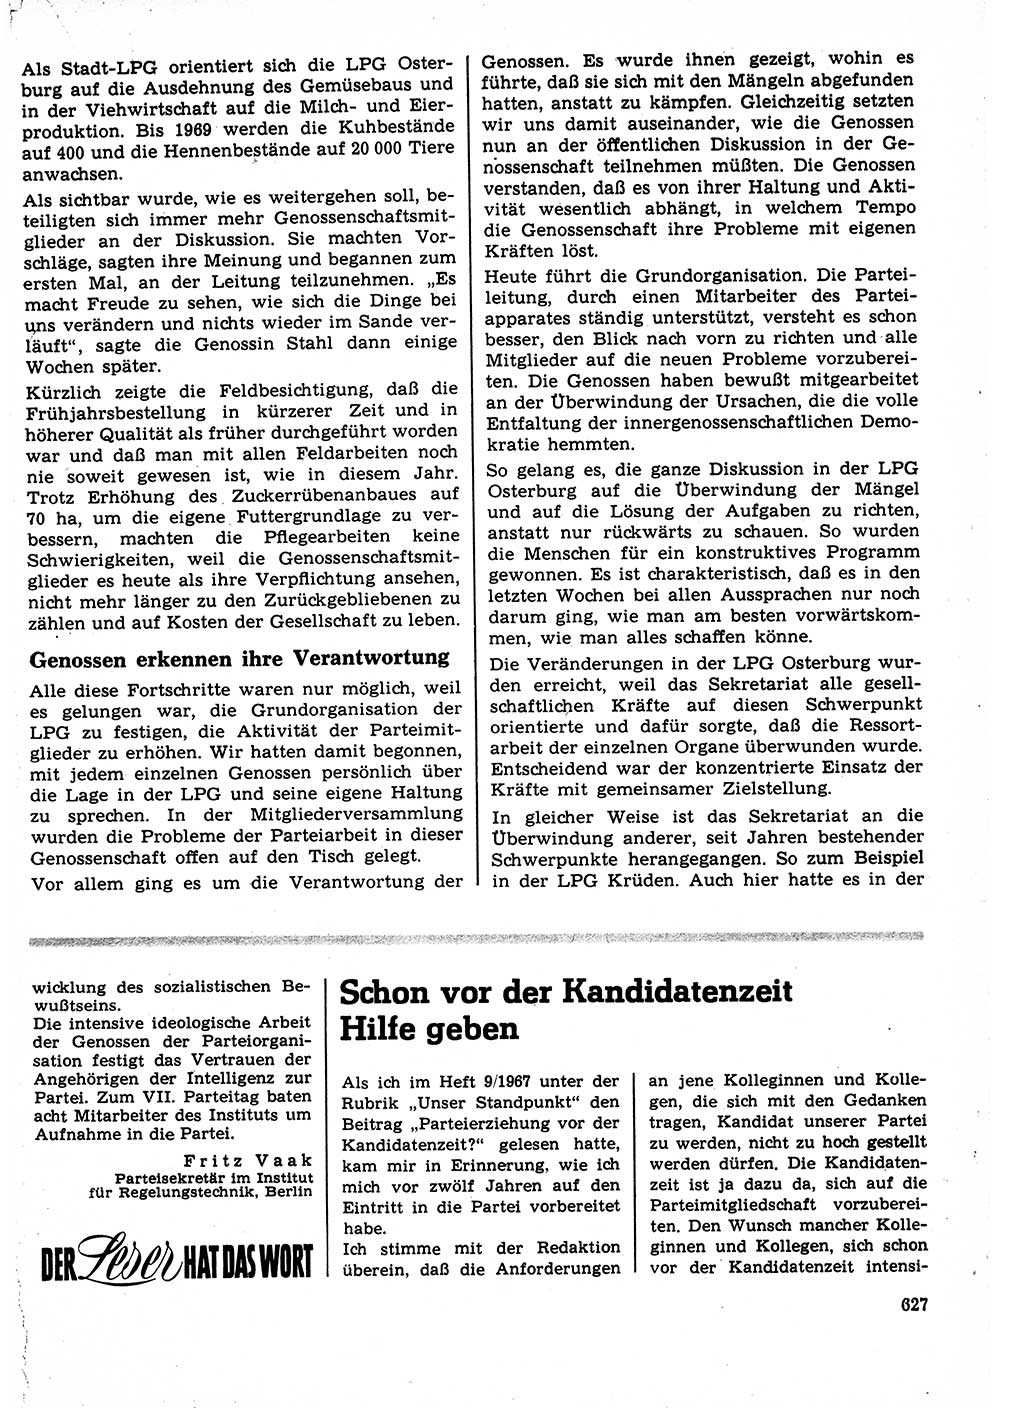 Neuer Weg (NW), Organ des Zentralkomitees (ZK) der SED (Sozialistische Einheitspartei Deutschlands) für Fragen des Parteilebens, 22. Jahrgang [Deutsche Demokratische Republik (DDR)] 1967, Seite 627 (NW ZK SED DDR 1967, S. 627)